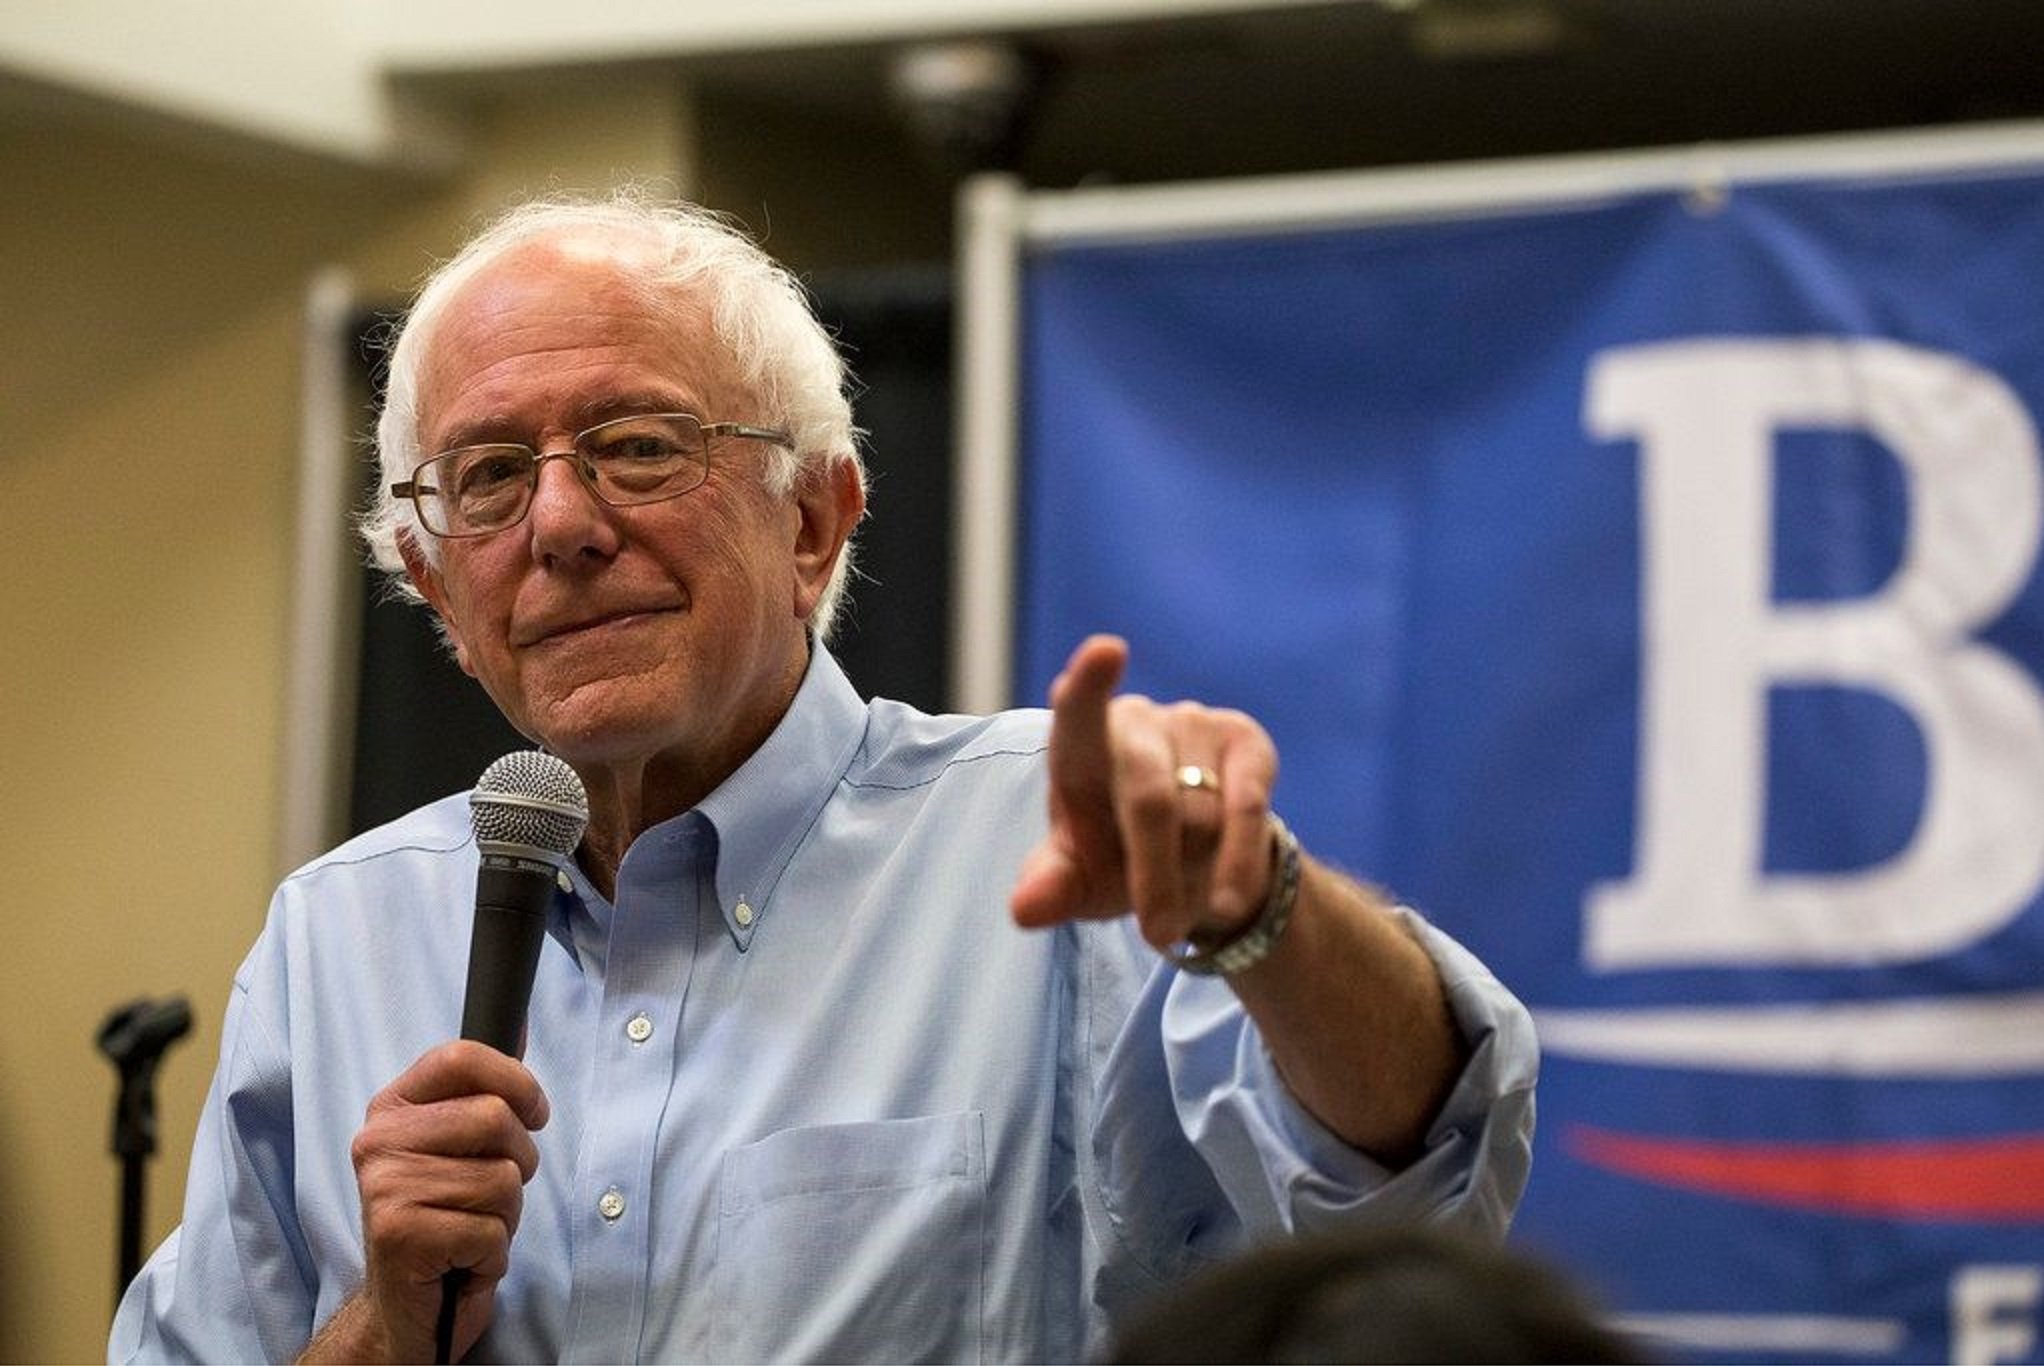 Sanders deixa la cursa per la presidència dels Estats Units: "Tots amb Biden"